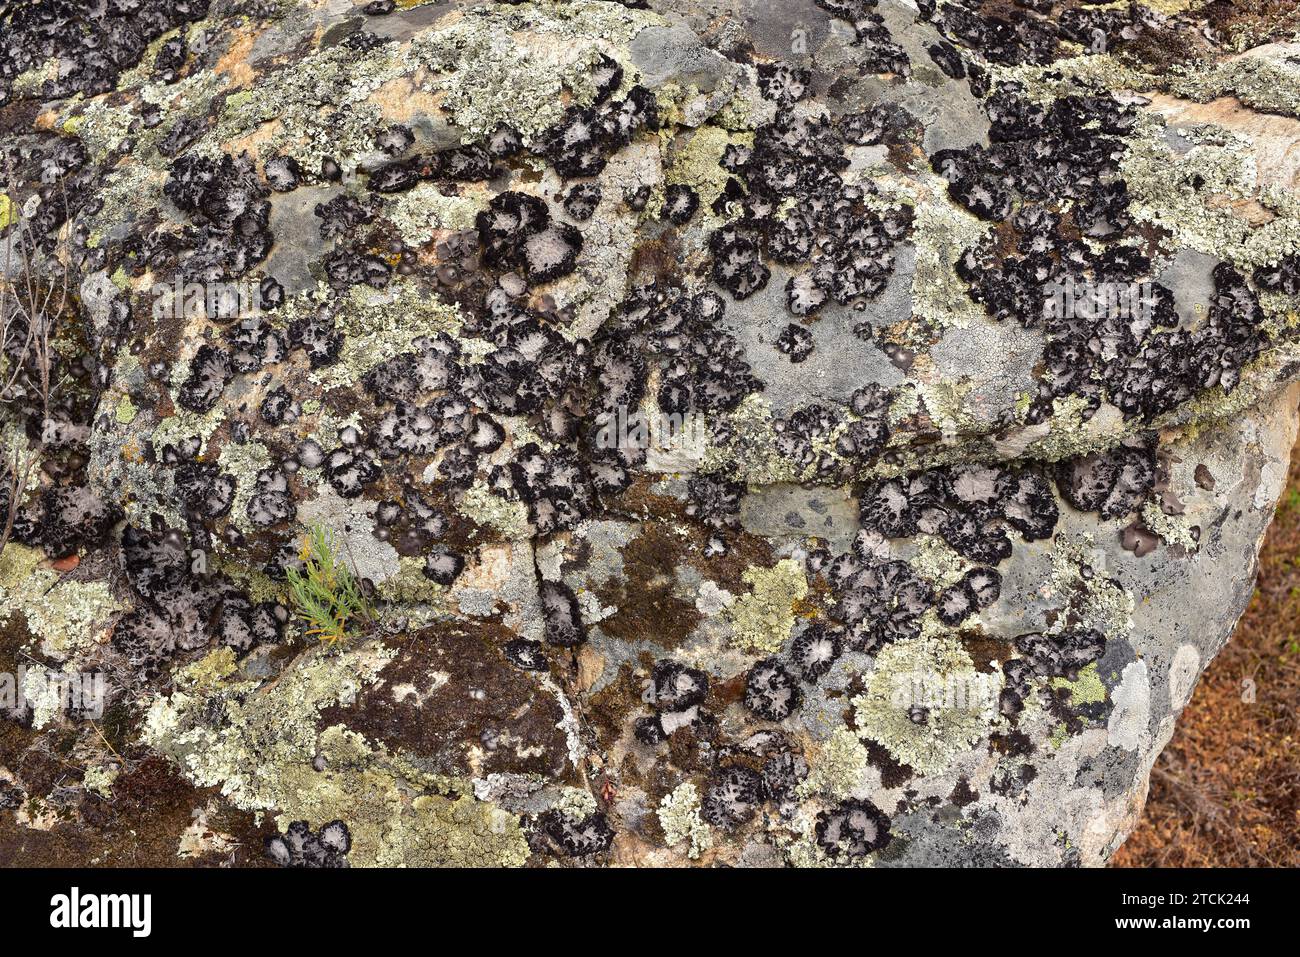 Lichen community dominated by Umbilicaria pustulata or Lasallia pustulata a foliose lichen. This photo was taken in Arribes del Duero Natural Park, Za Stock Photo